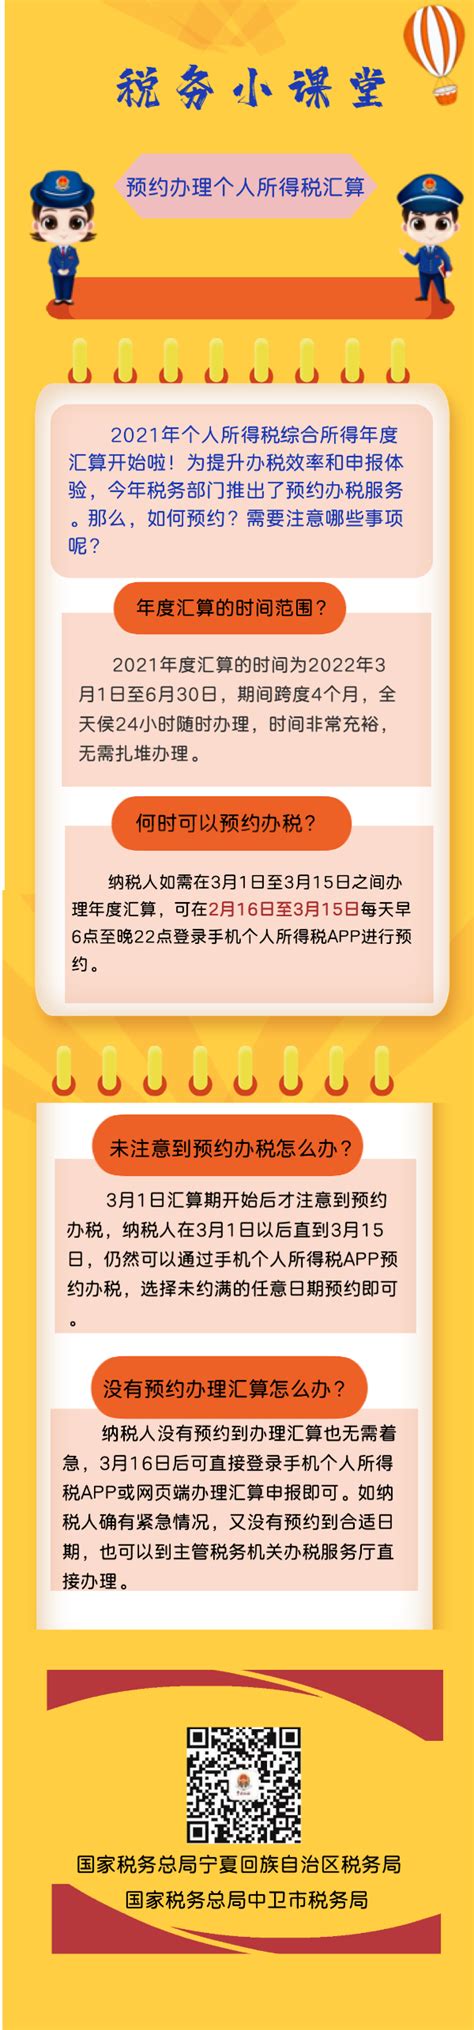 宁夏电子税务局网上申报缴税系统图片预览_绿色资源网